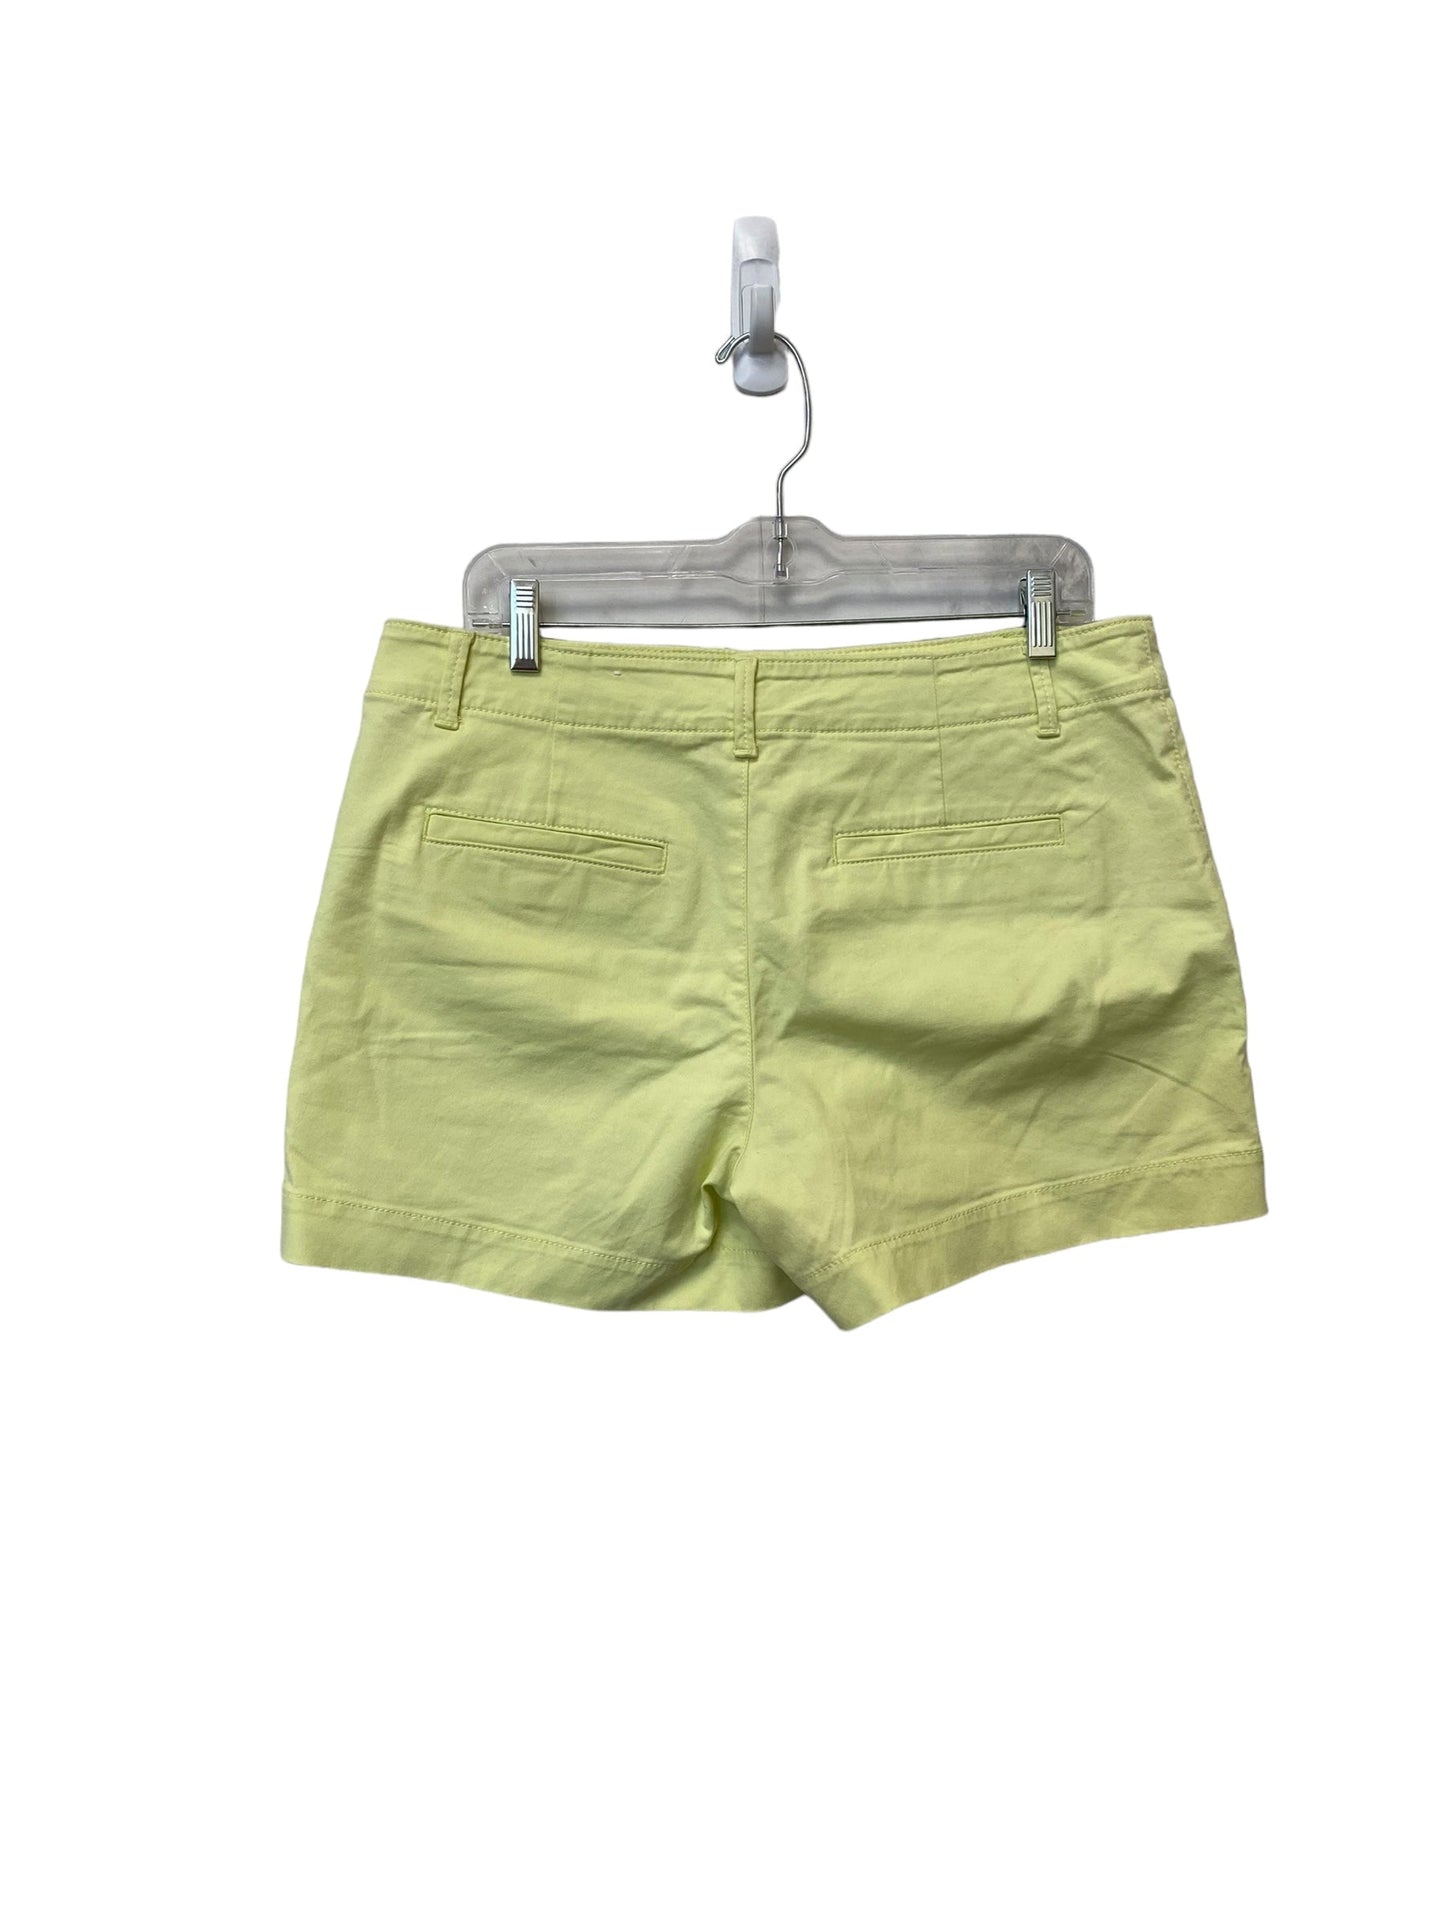 Yellow Shorts Loft, Size 8